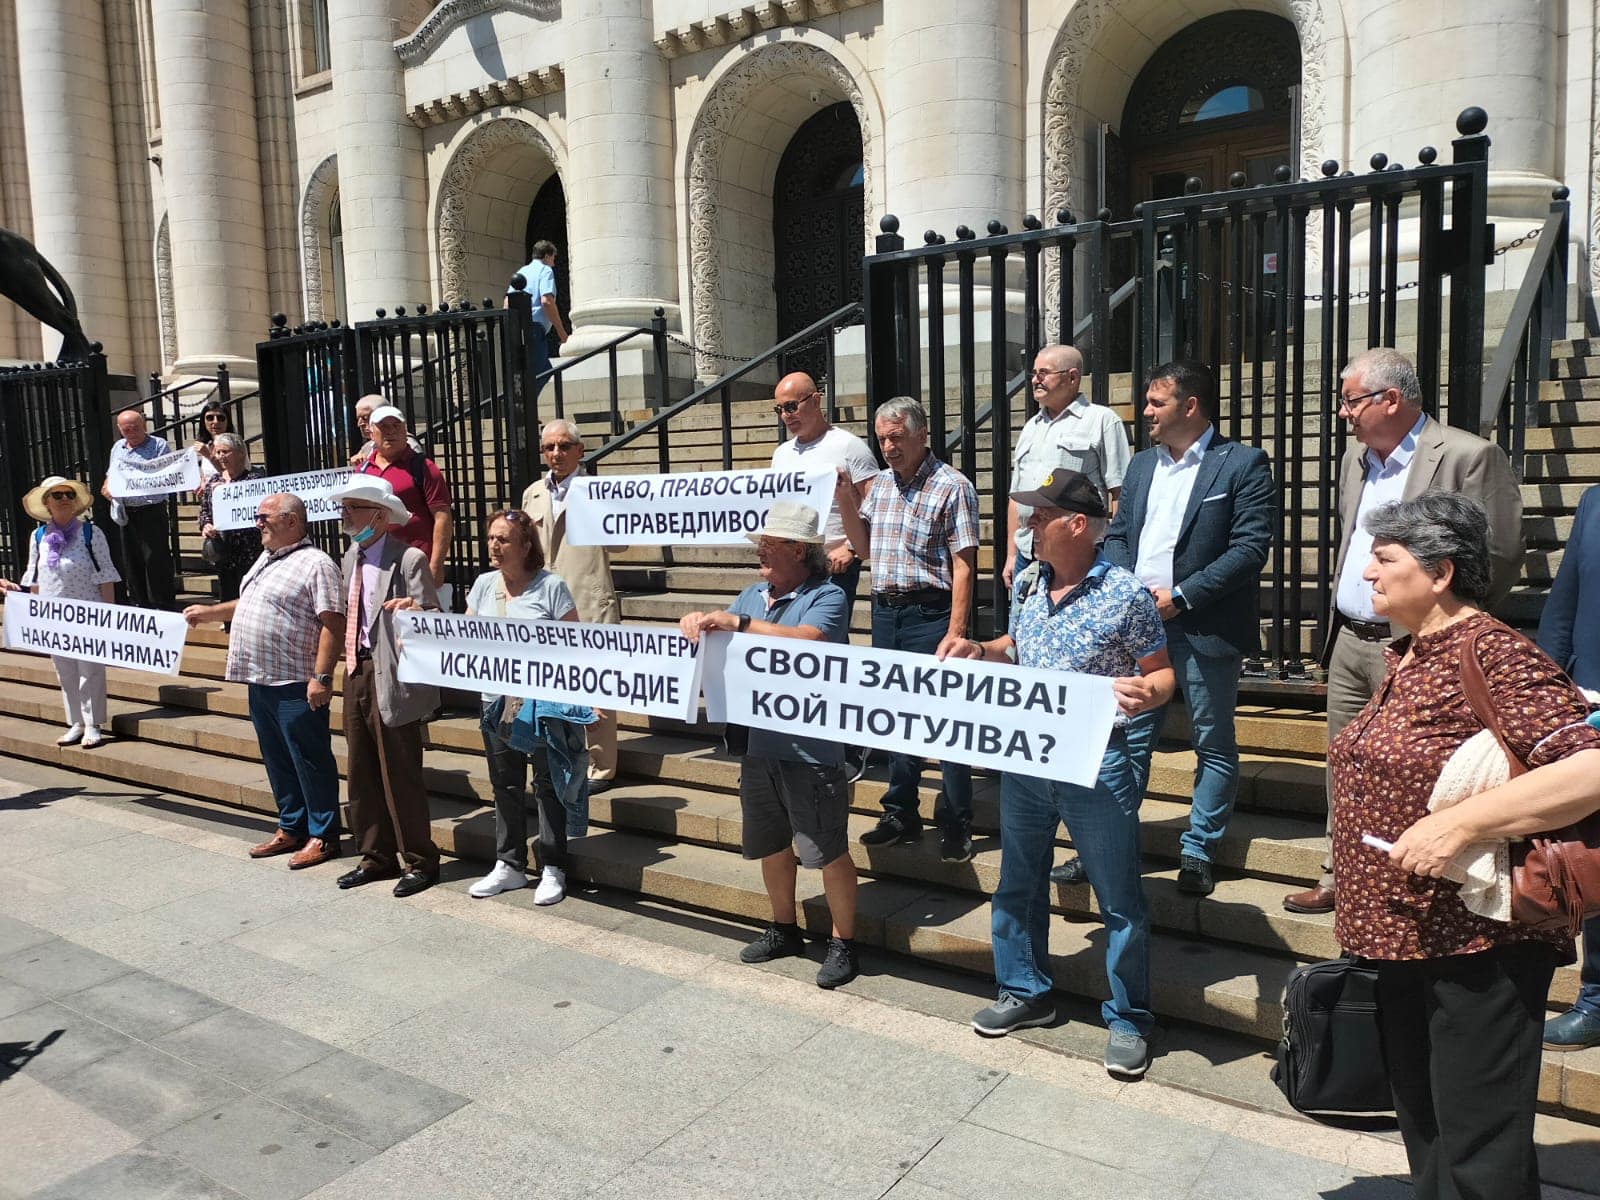 Bulgaristan’da Müslümanlara karşı asimilasyon kampanyası davasının kapatılması protesto edildi